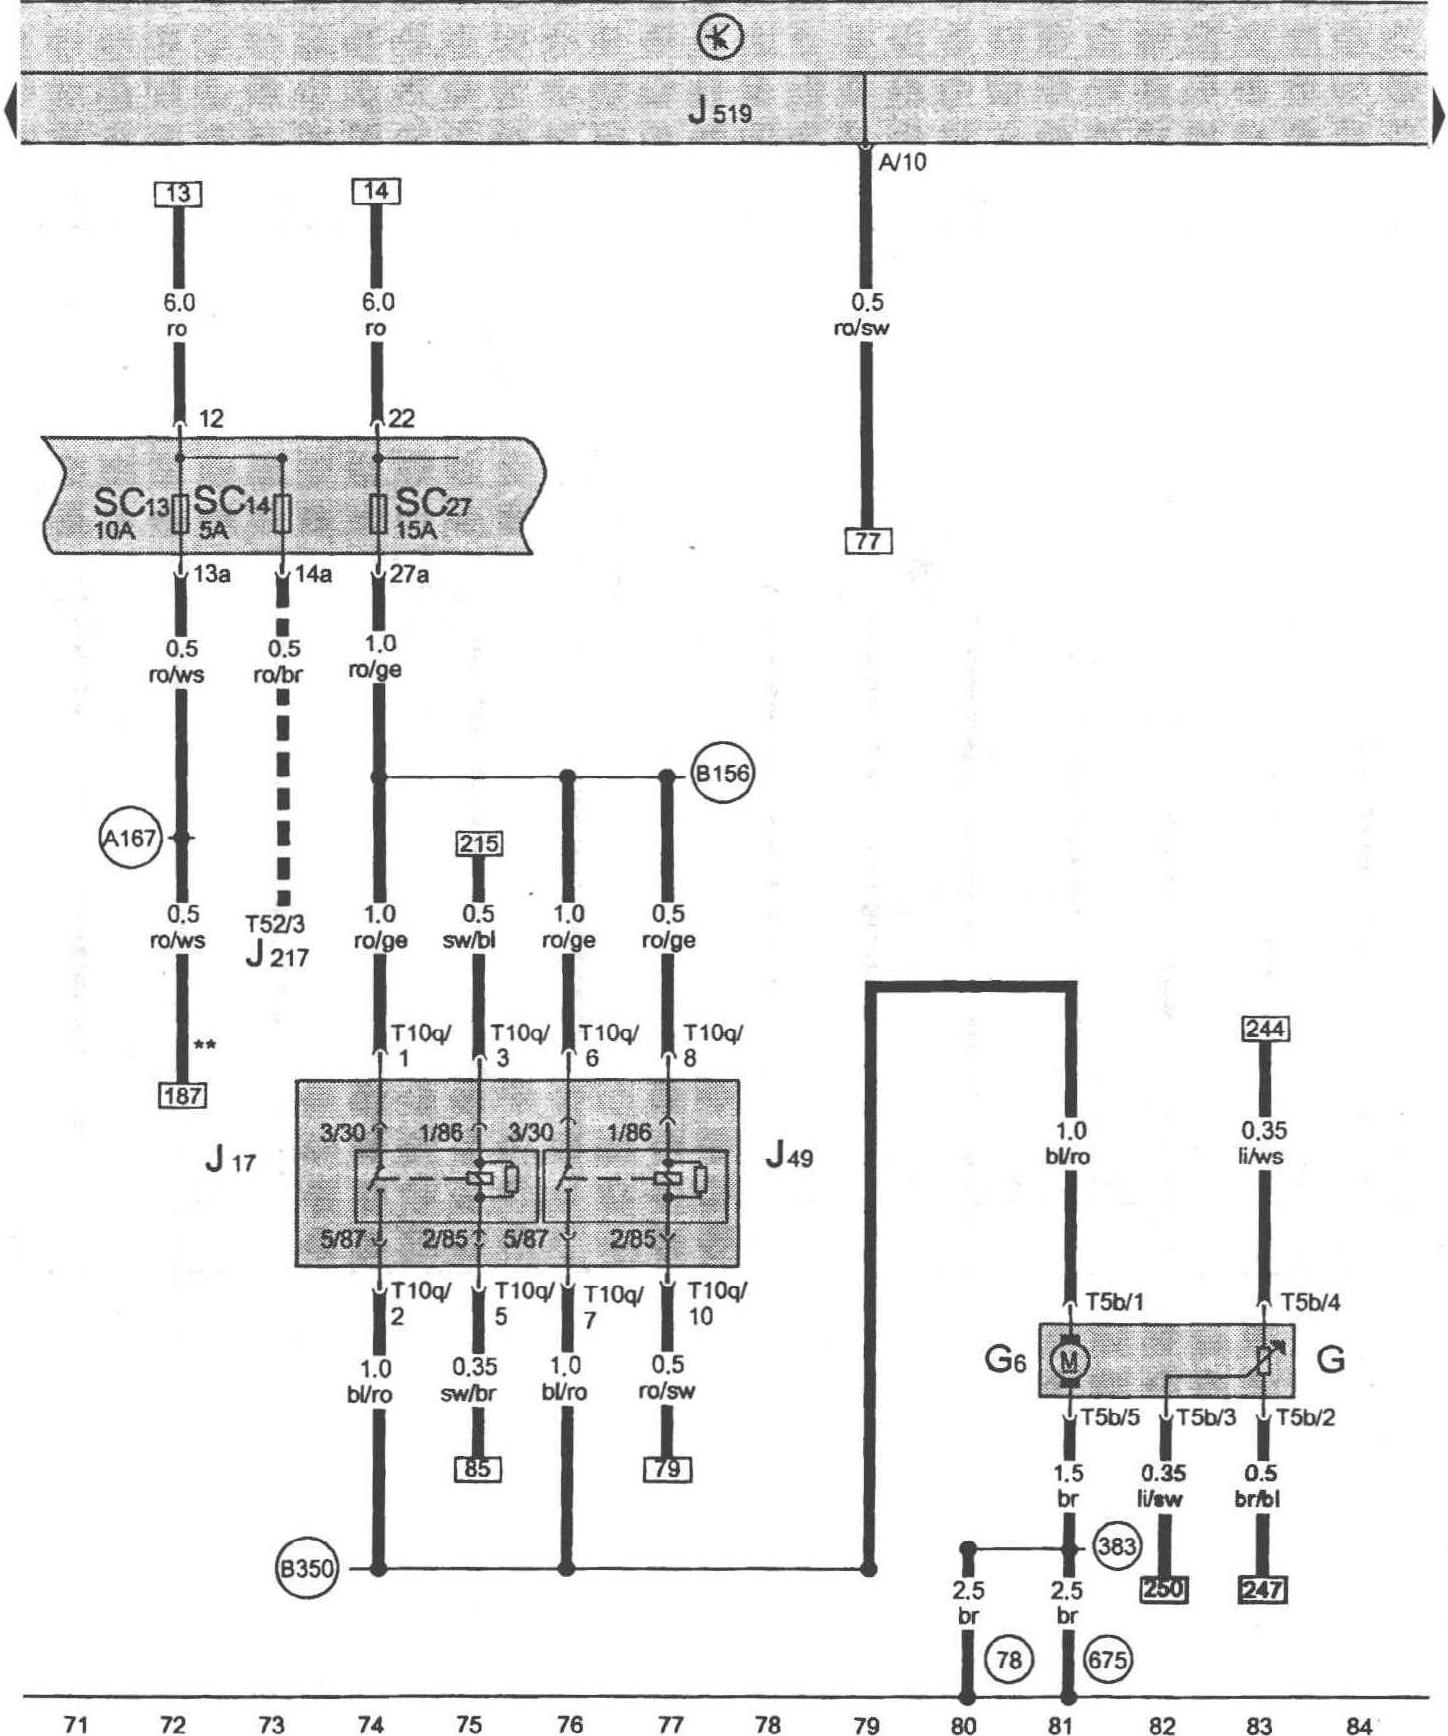 图1-1-8 燃油存量传感器、预供给燃油泵、燃油泵继电器、电动燃油泵2继电器、车载电网控制单元